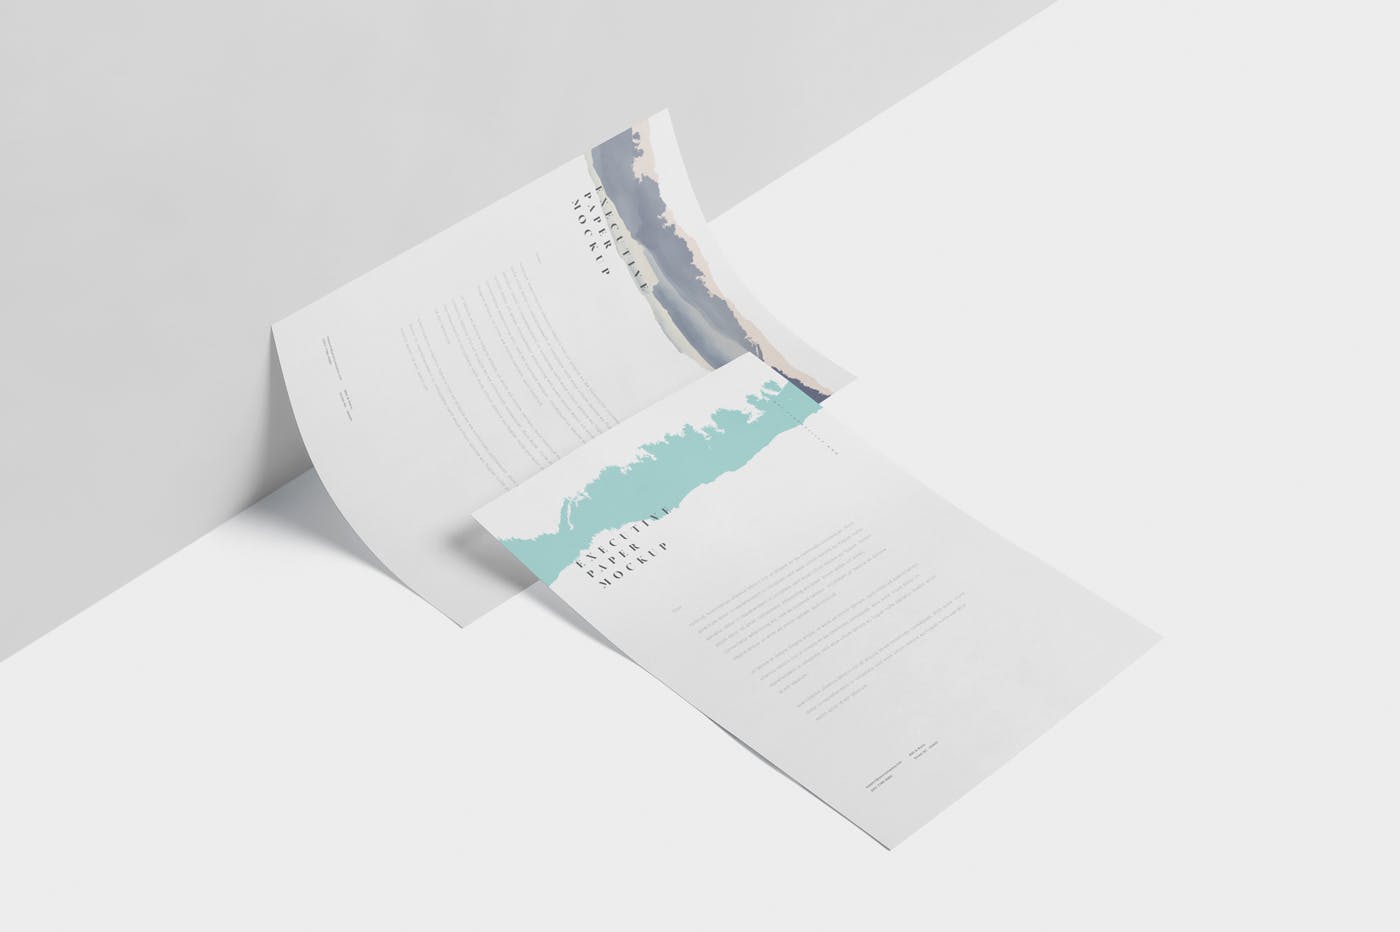 企业宣传单张设计效果图样机16图库精选 Executive Paper Mockup – 7×10 Inch Size插图(2)